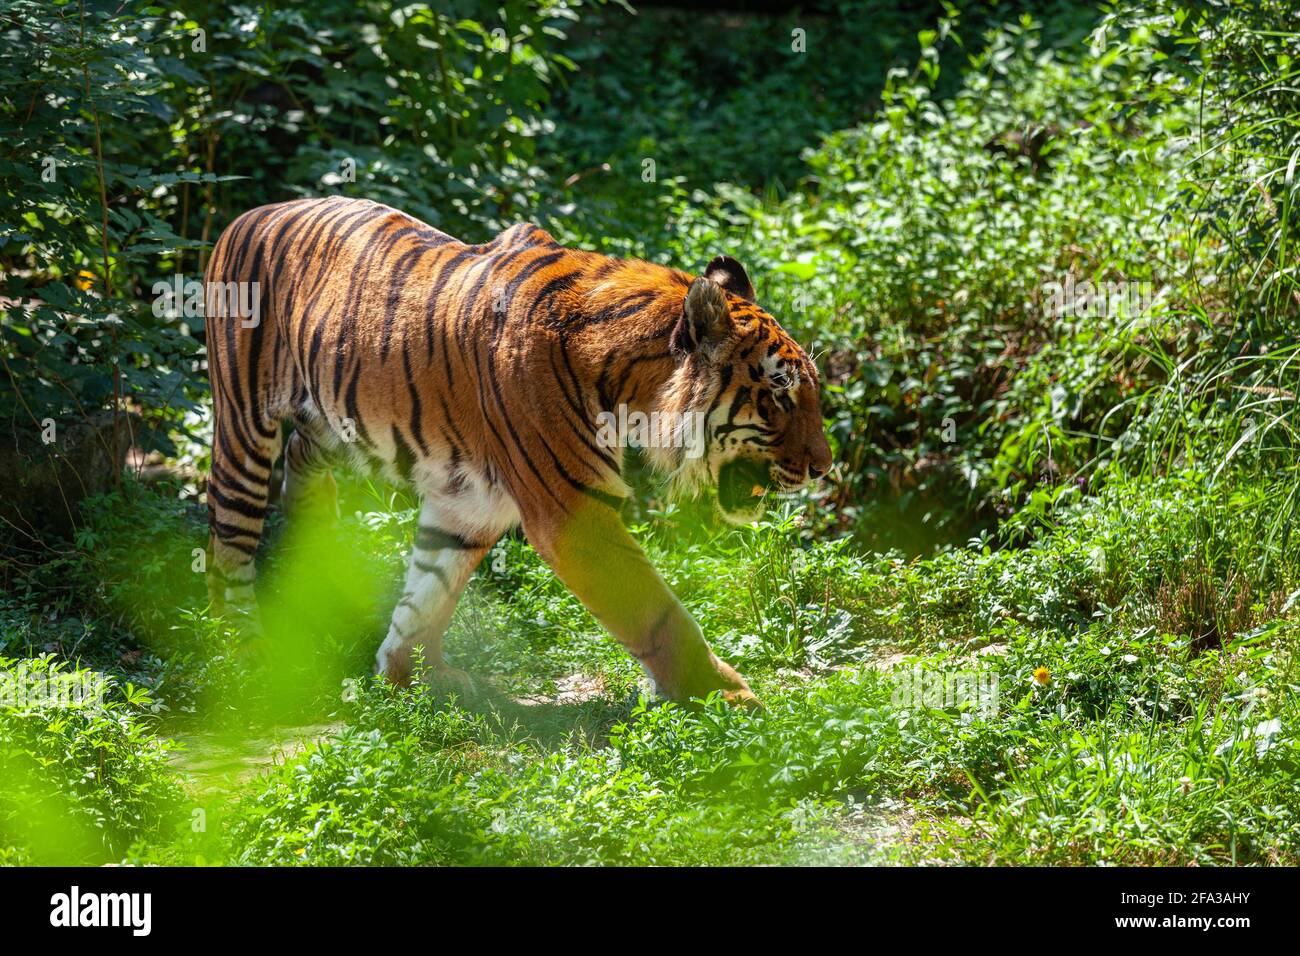 Le tigre, Panthera tigris Linnaeus, est un mammifère carnivore de la famille des félidés. C'est le plus grand des « grands chats ». Lyon, France Banque D'Images